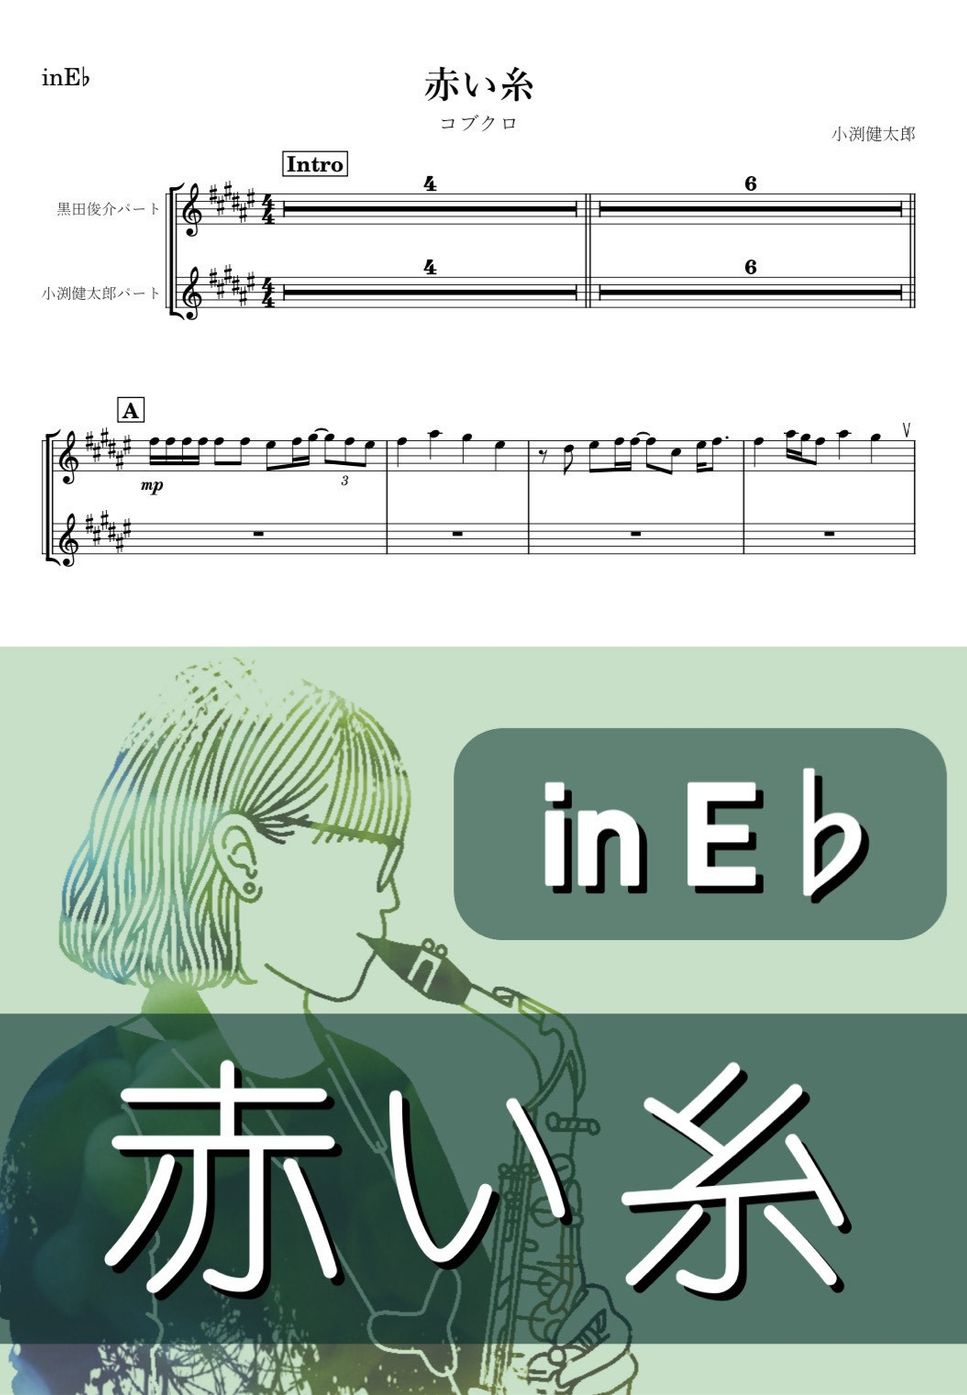 コブクロ - 赤い糸 (E♭) by kanamusic